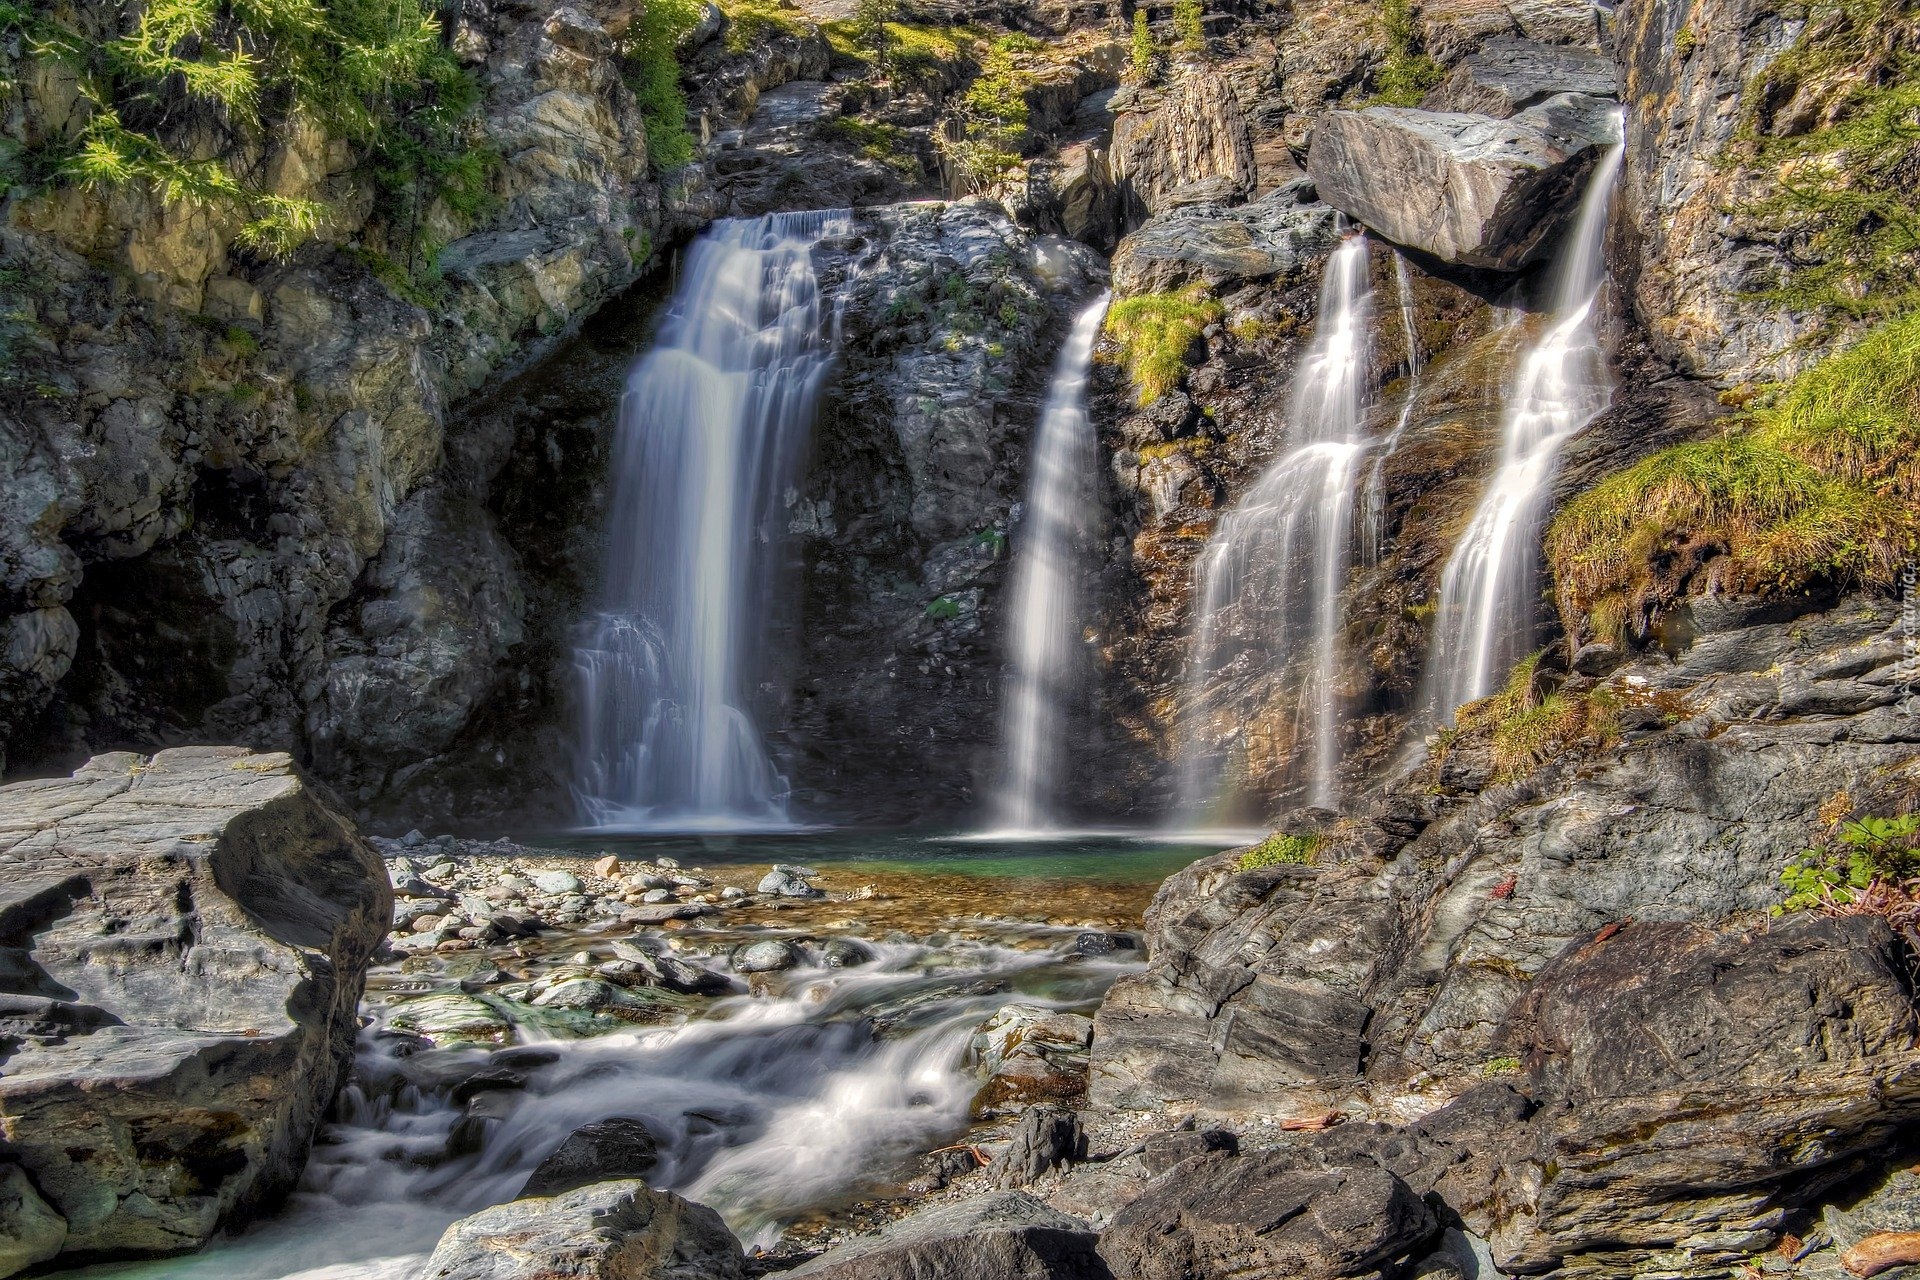 Wodospad, Skały, Dolina Aosty, Park Narodowy Gran Paradiso, Włochy